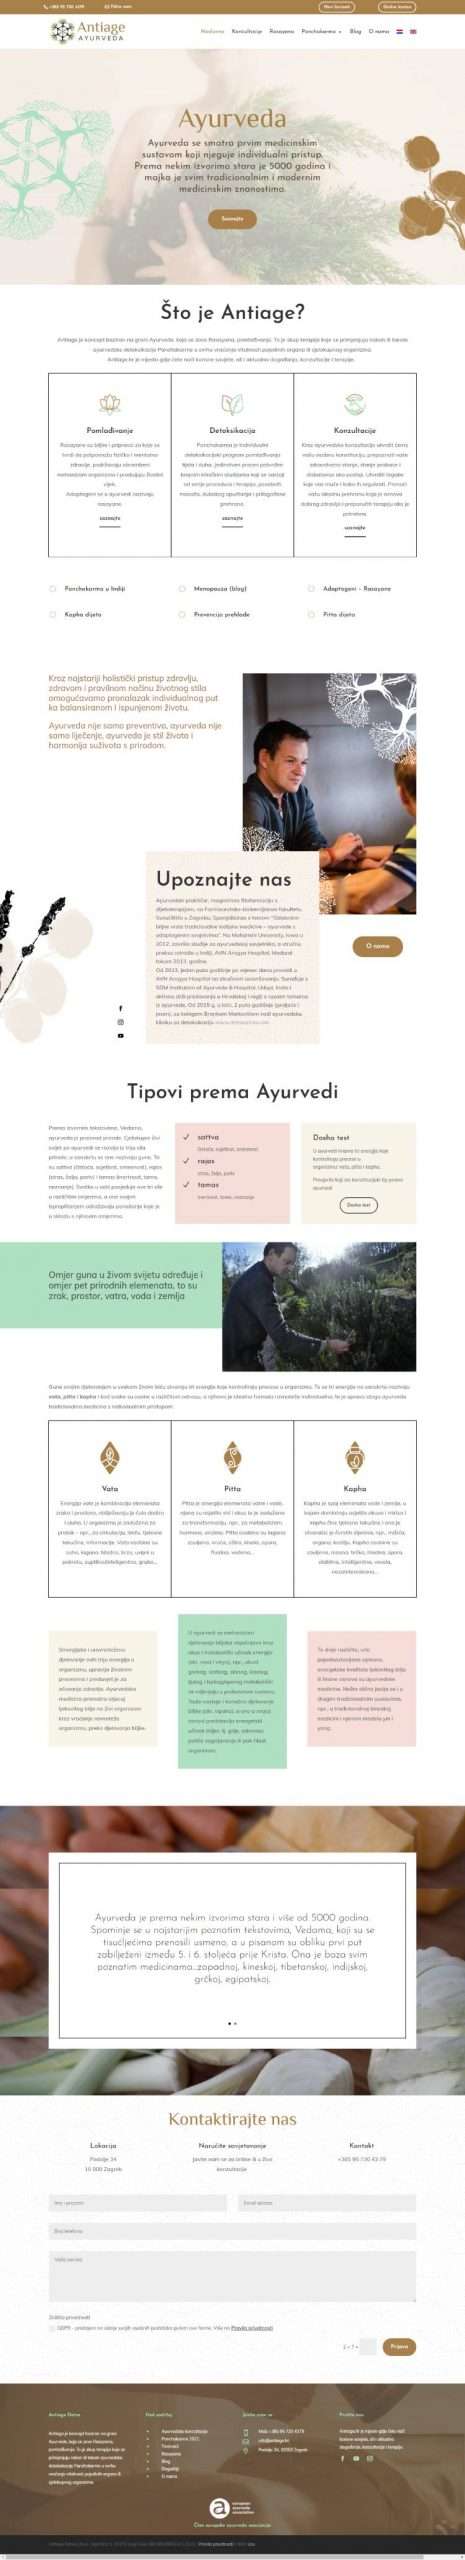 meli web designer portfolio - ayurvedic consultant page